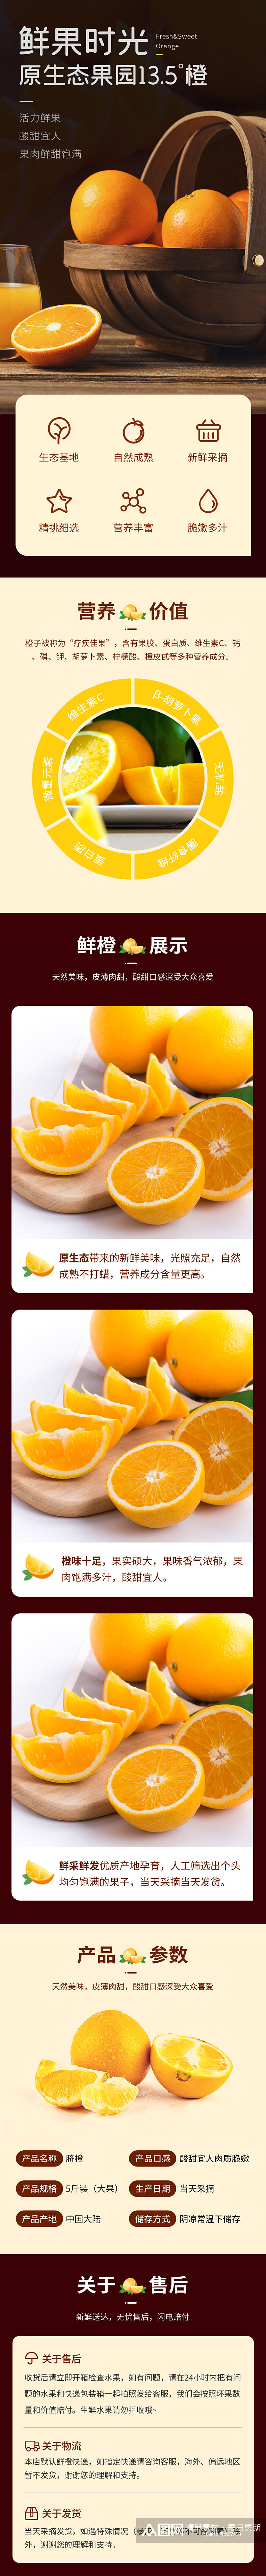 淘宝天猫水果详情页通用橙子素材